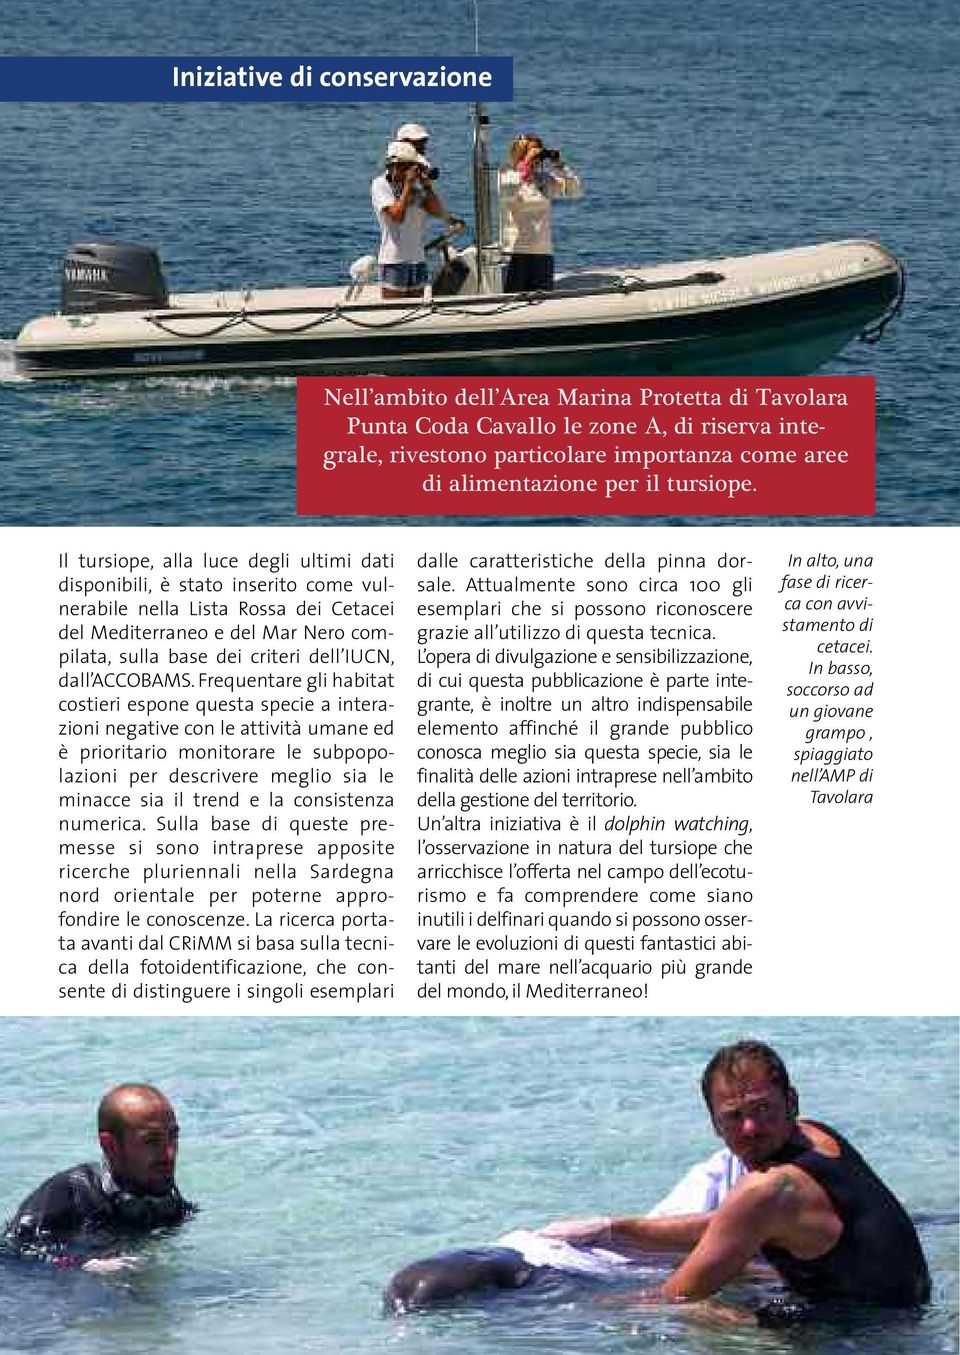 Il tursiope, alla luce degli ultimi dati disponibili, è stato inserito come vulnerabile nella Lista Rossa dei Cetacei del Mediterraneo e del Mar Nero compilata, sulla base dei criteri dell IUCN, dall